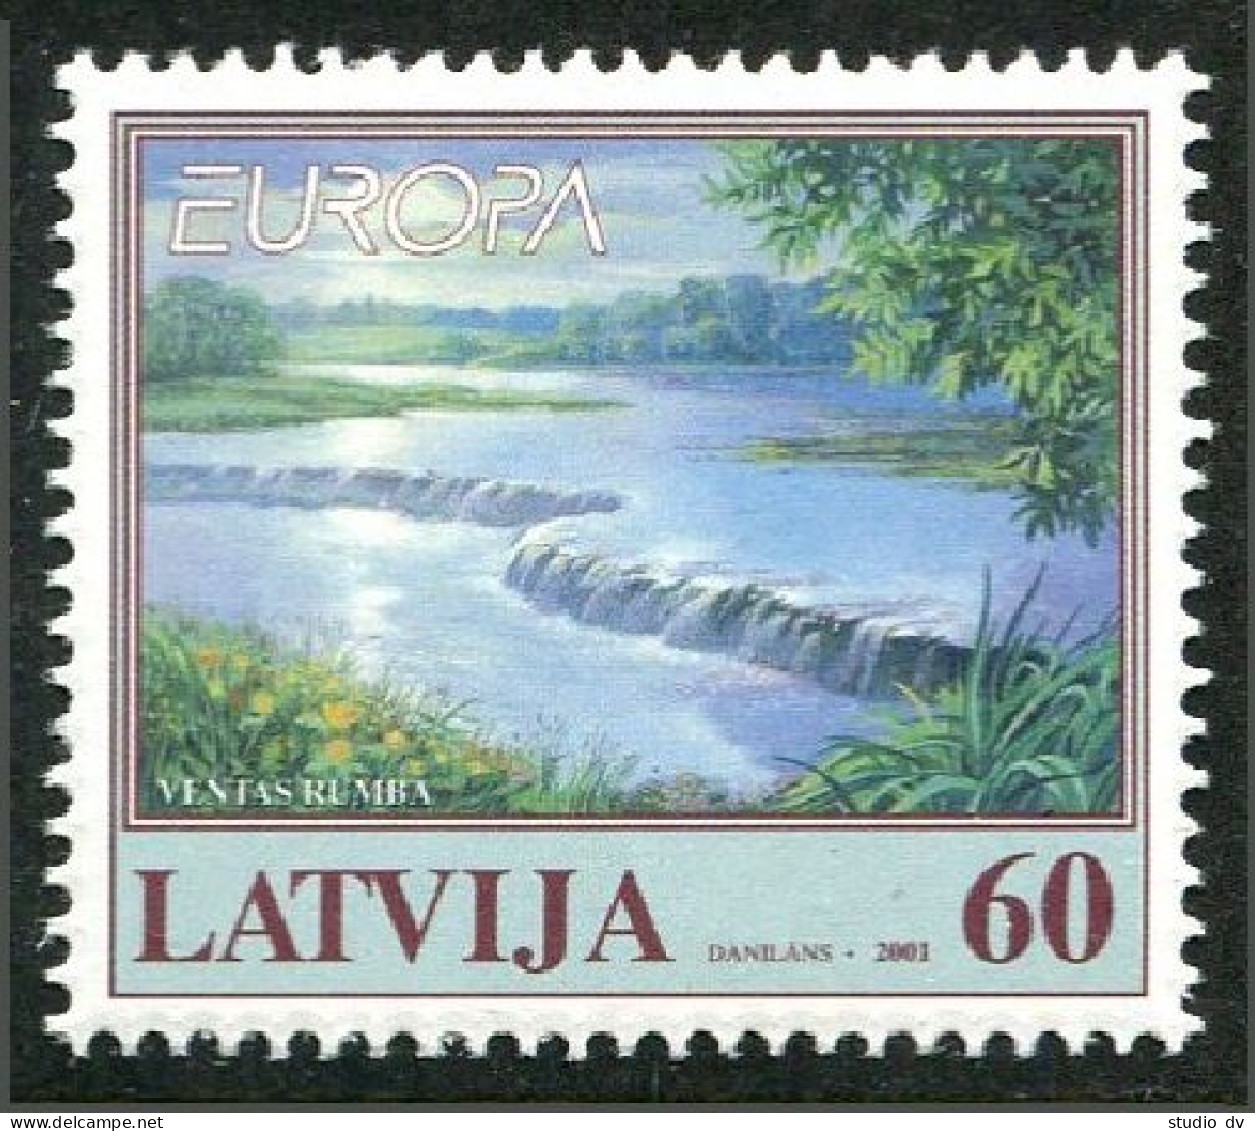 Latvia 528, MNH. Michel 544. EUROPA CEPT-2001. Lake. - Latvia